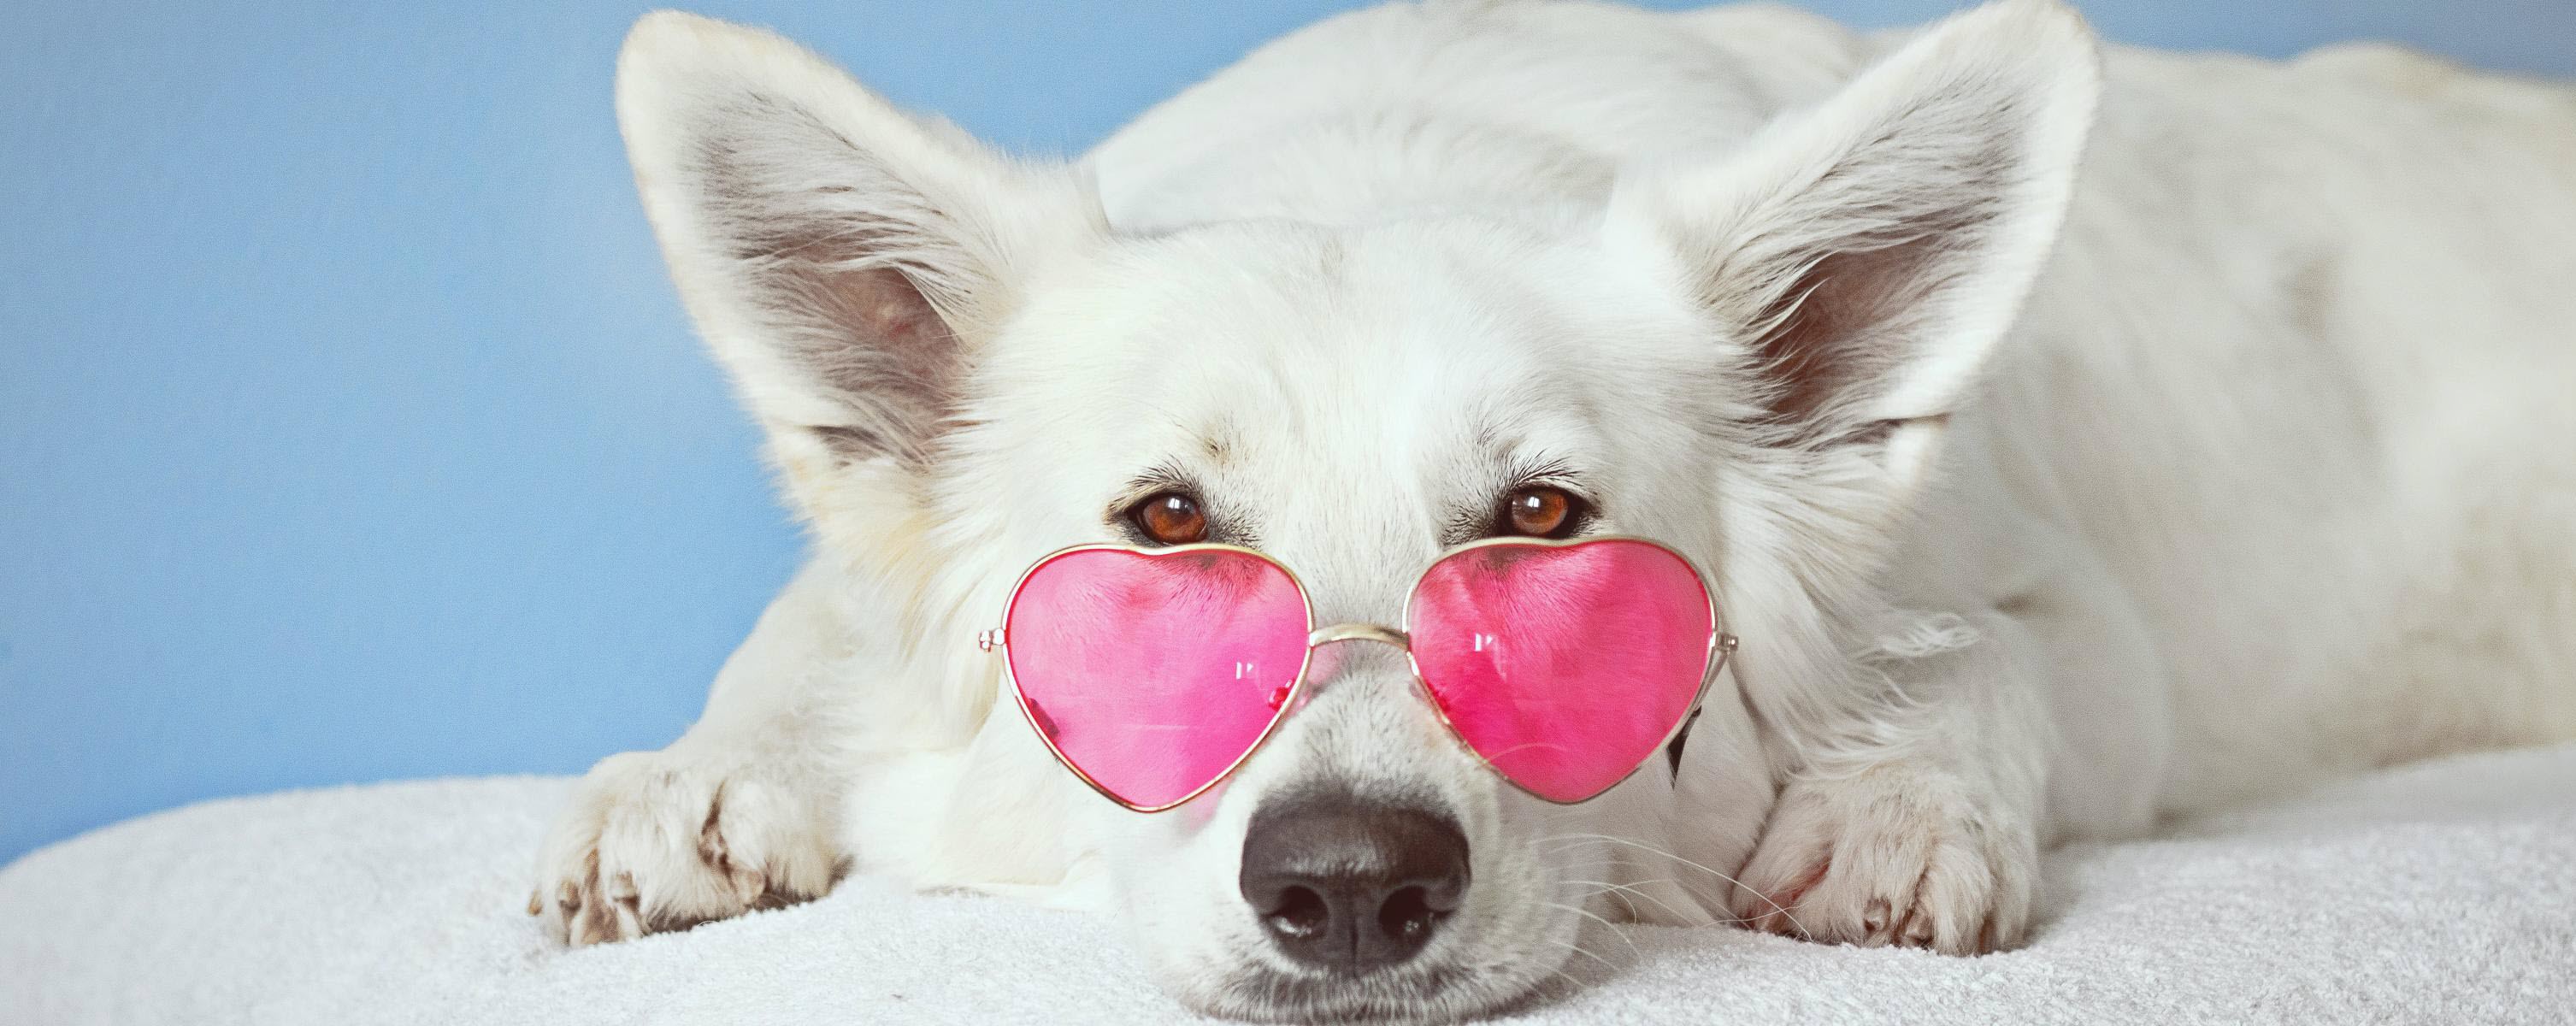 Ảnh chó đeo kính trái tim dễ thương